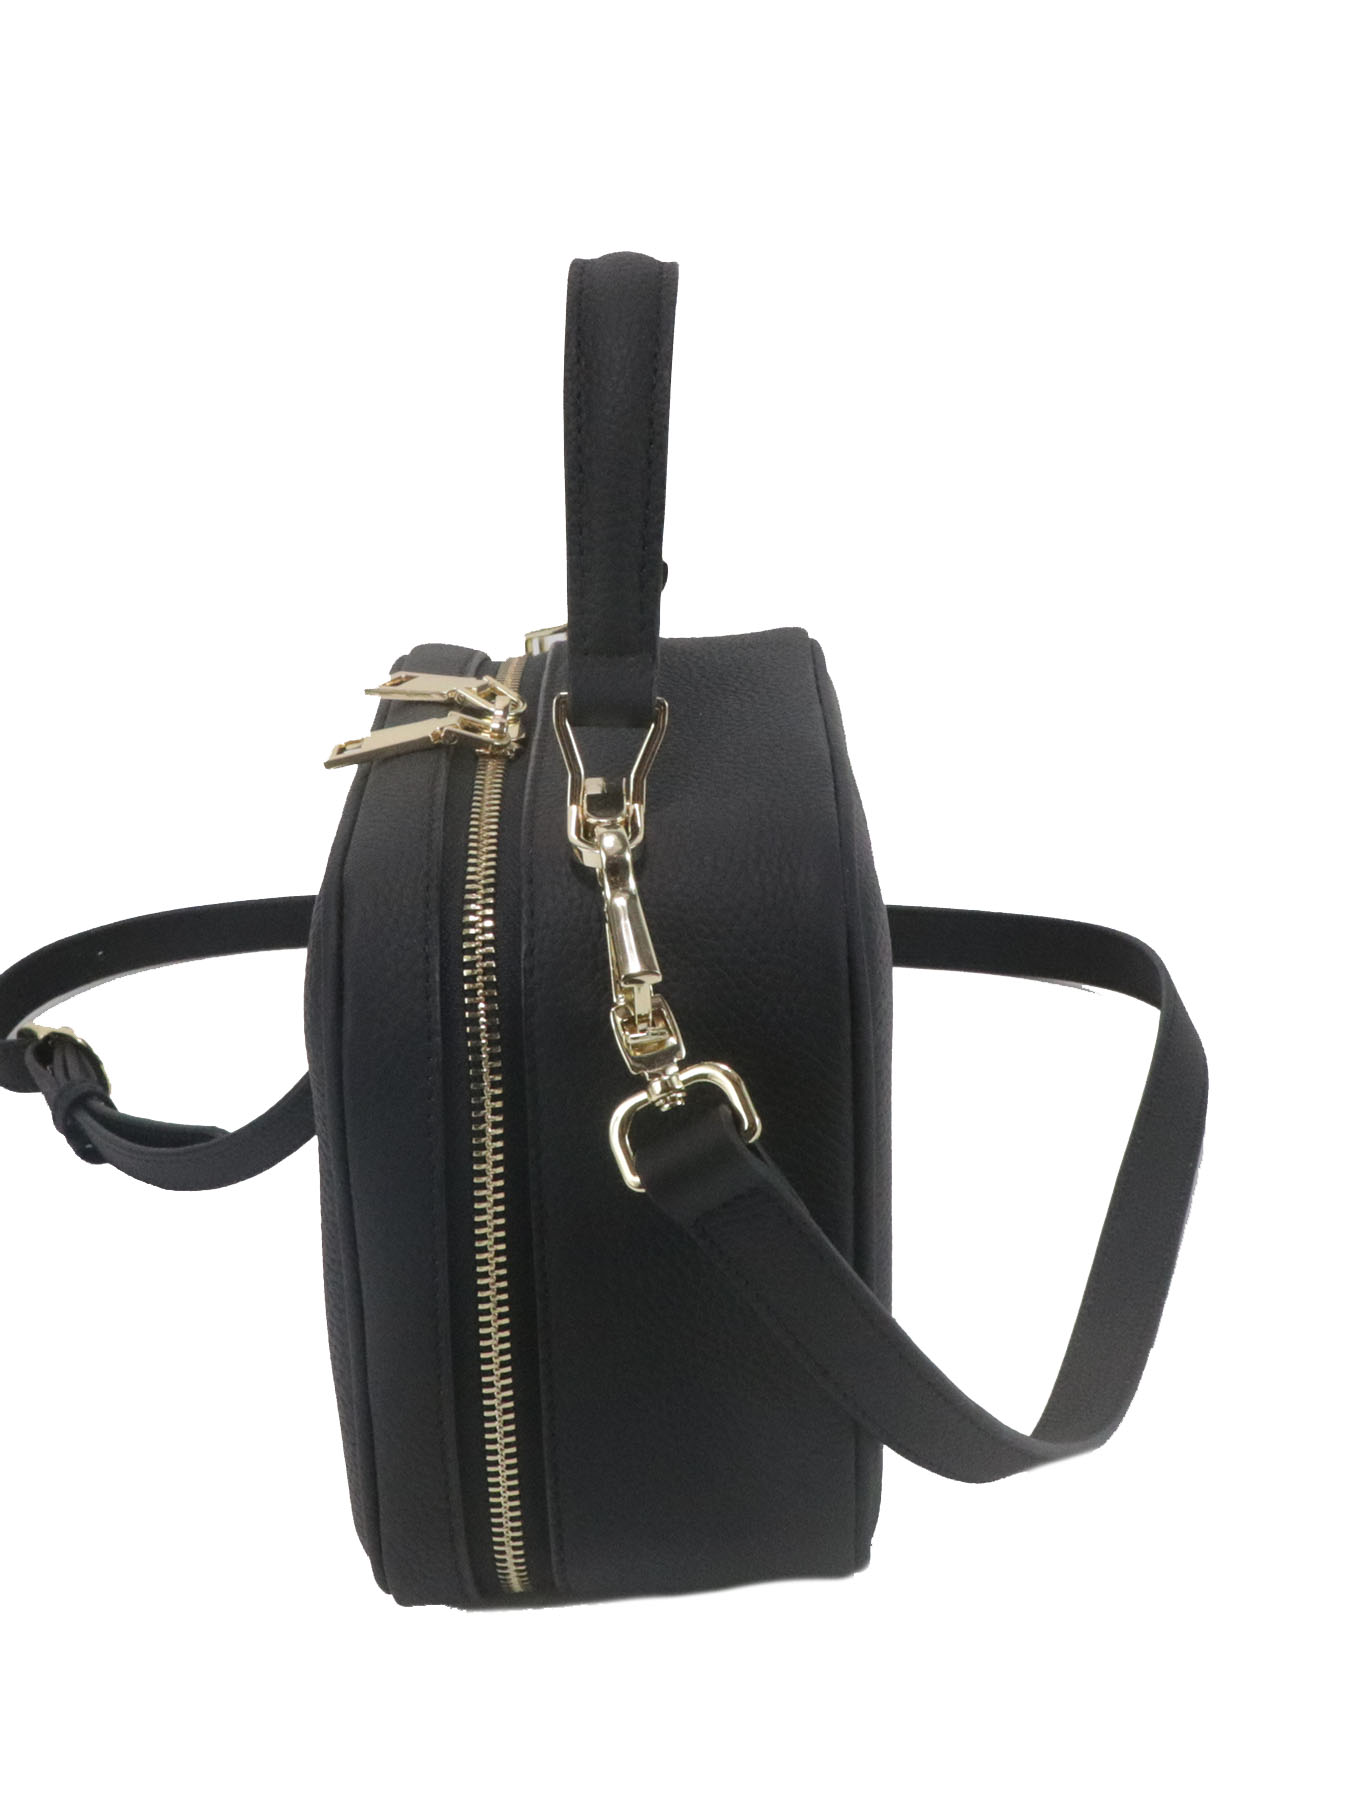 Fashionable large capacity luxury black crossbody bag